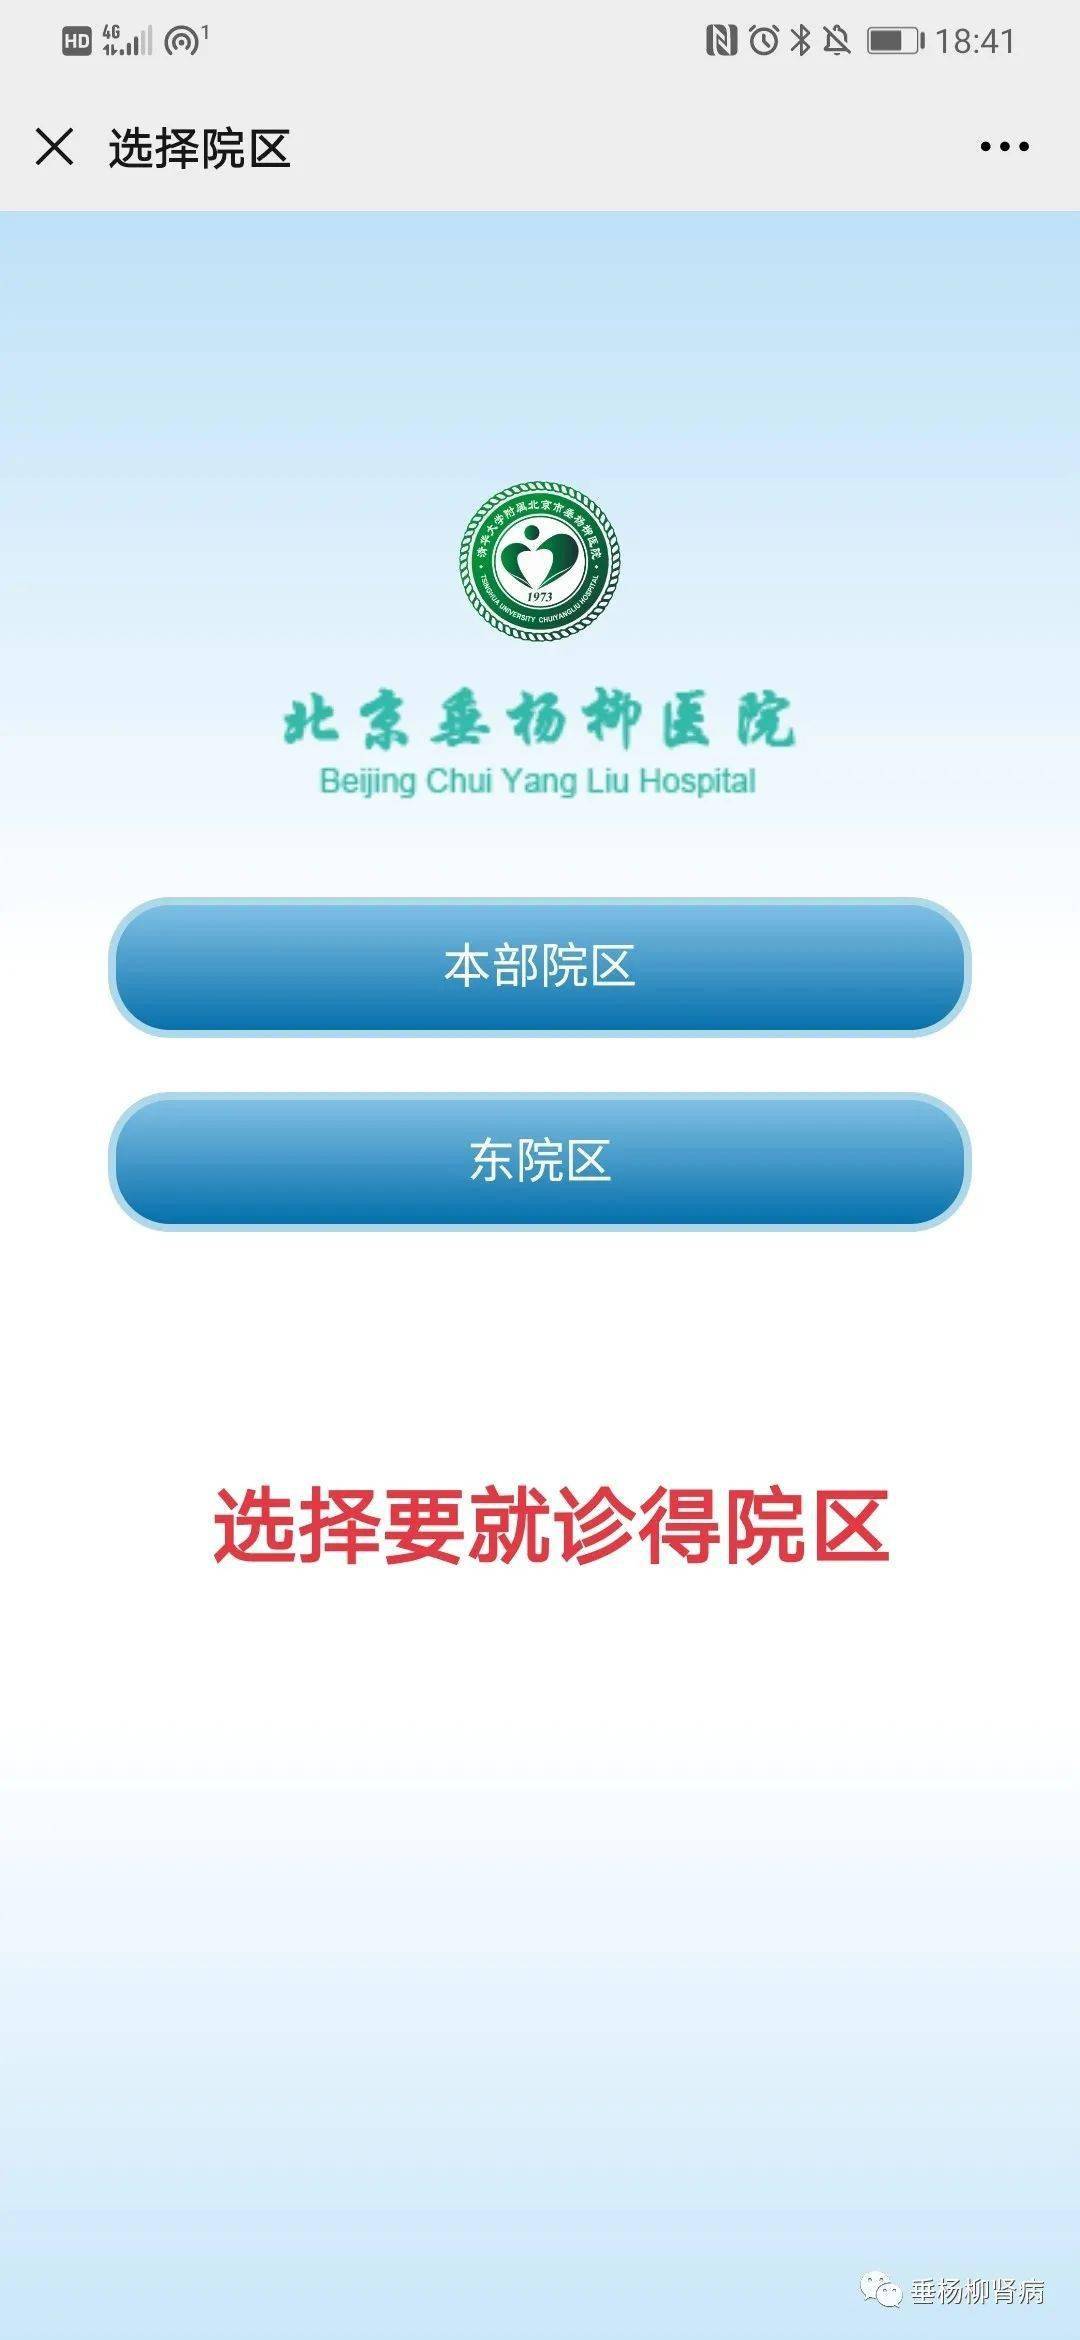 包含北京中医院急代挂号电话，病友给的实测有用（已挂号）的词条